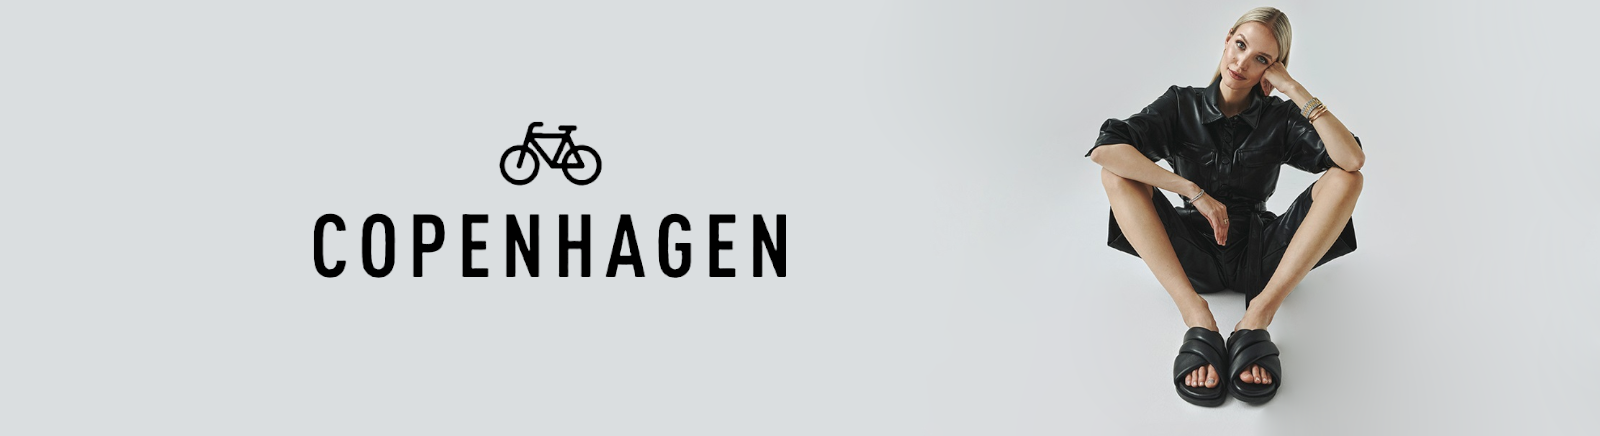 Prange: Copenhagen Halbschuhe für Herren online shoppen